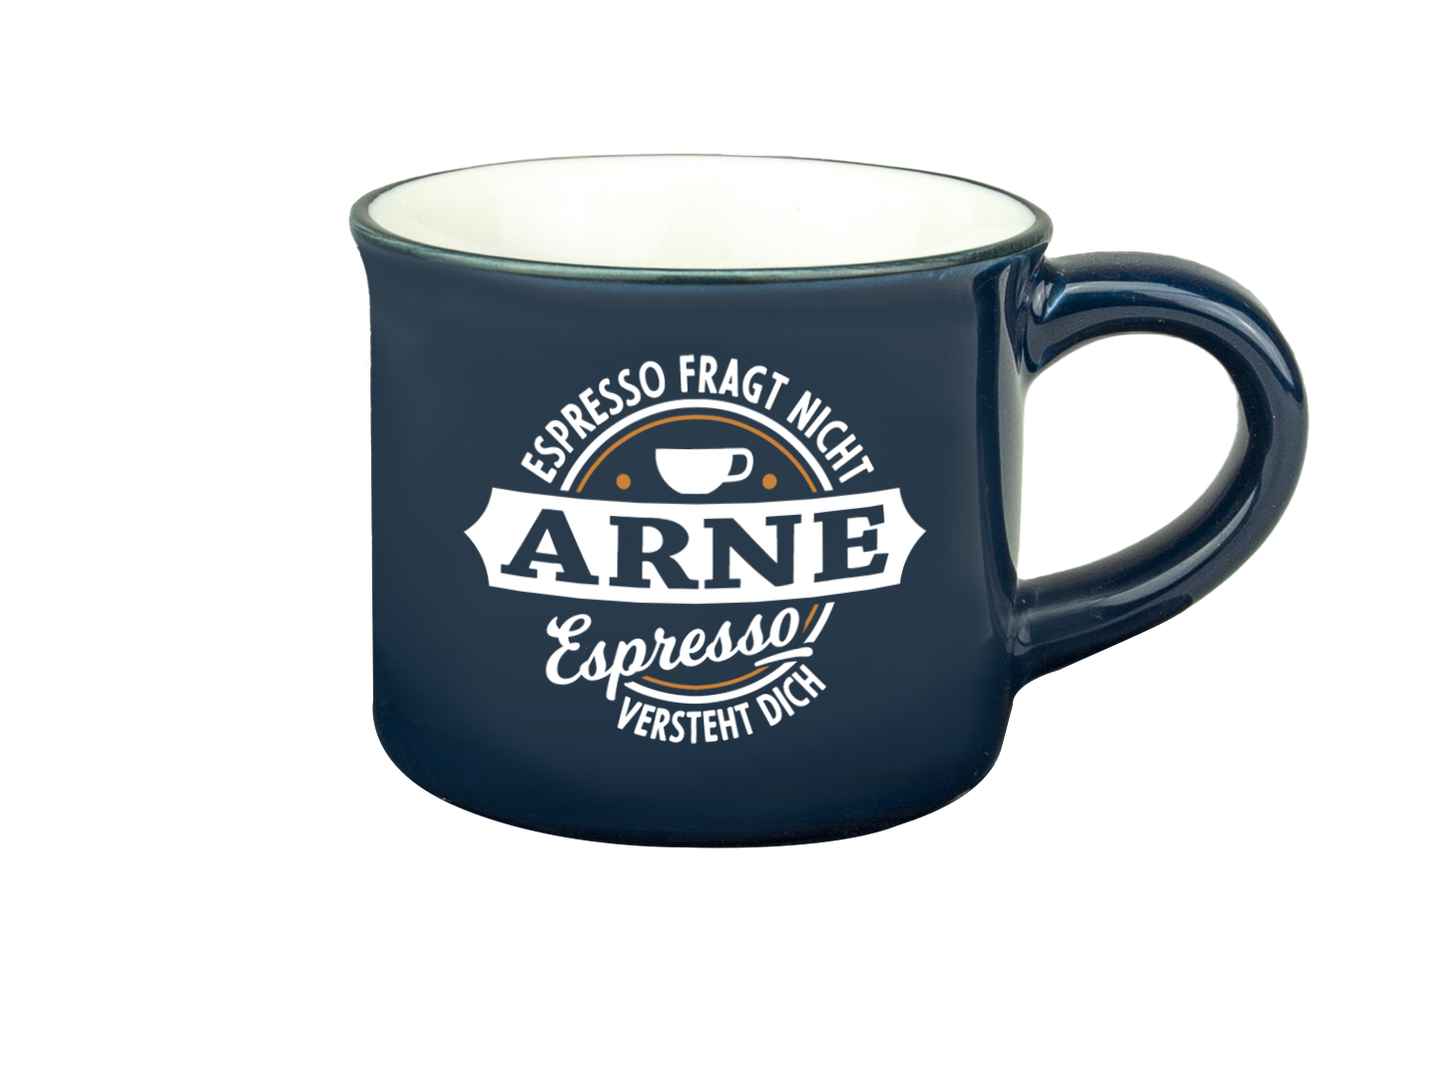 H & H Espresso-Tasse - Espresso fragt nicht, Arne Espresso versteht Dich!